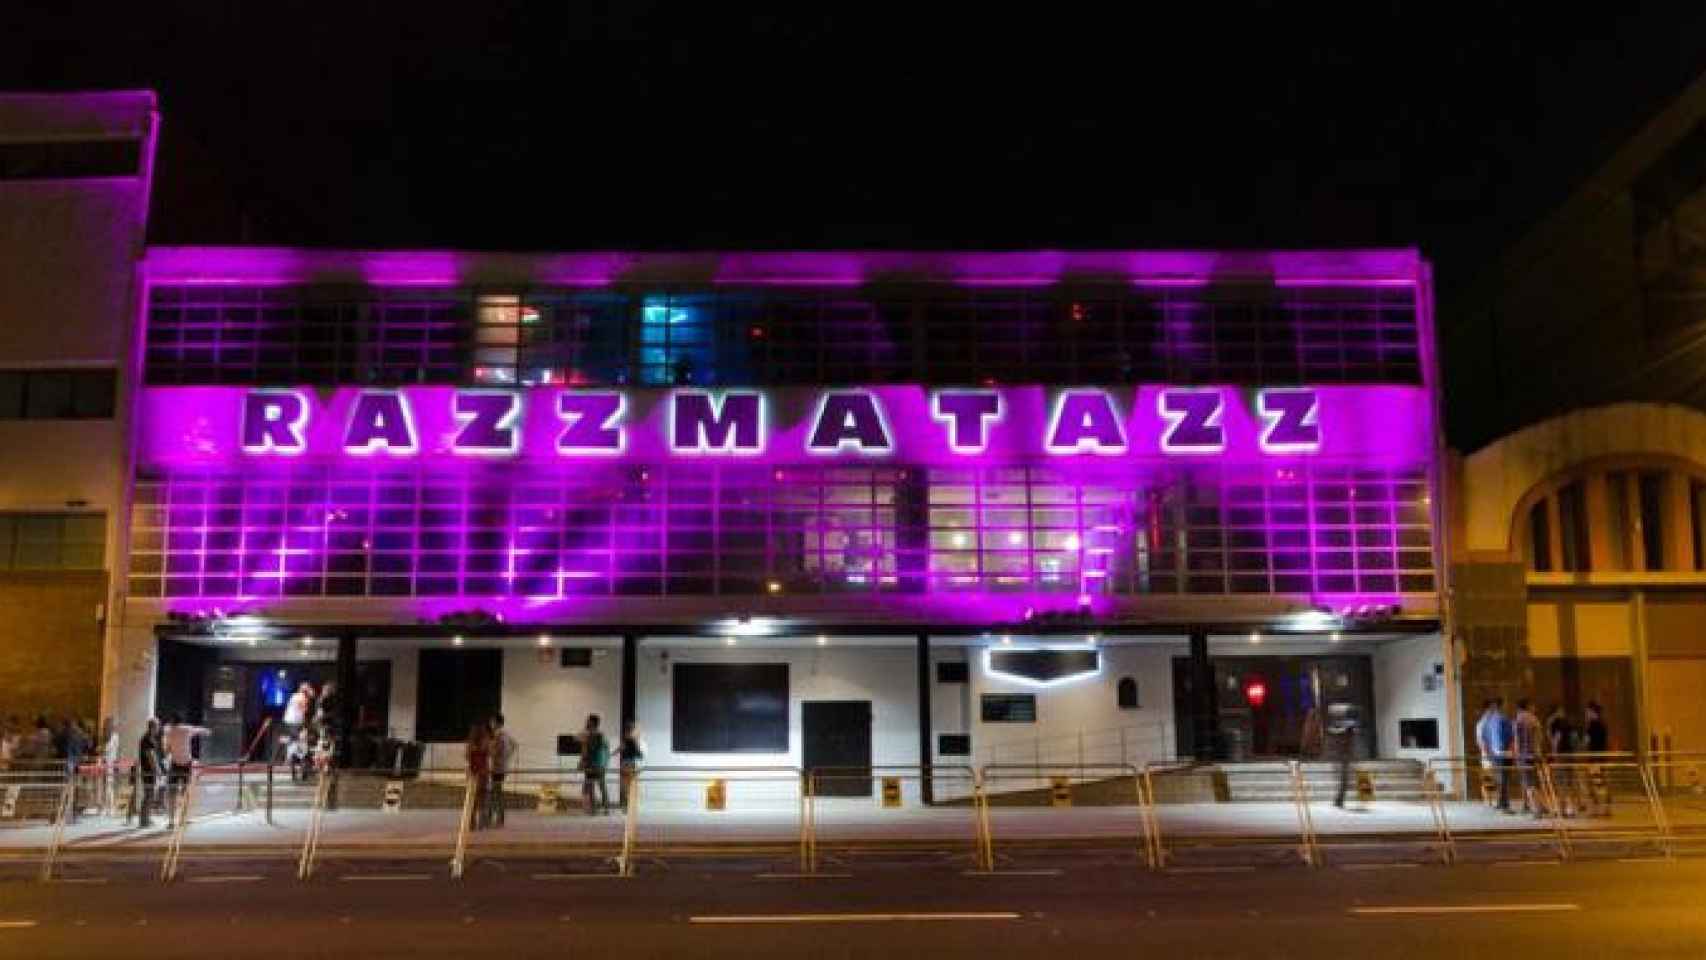 La discoteca Razzmatazz, la más conocida de Barcelona, ha reforzado la seguridad / CG